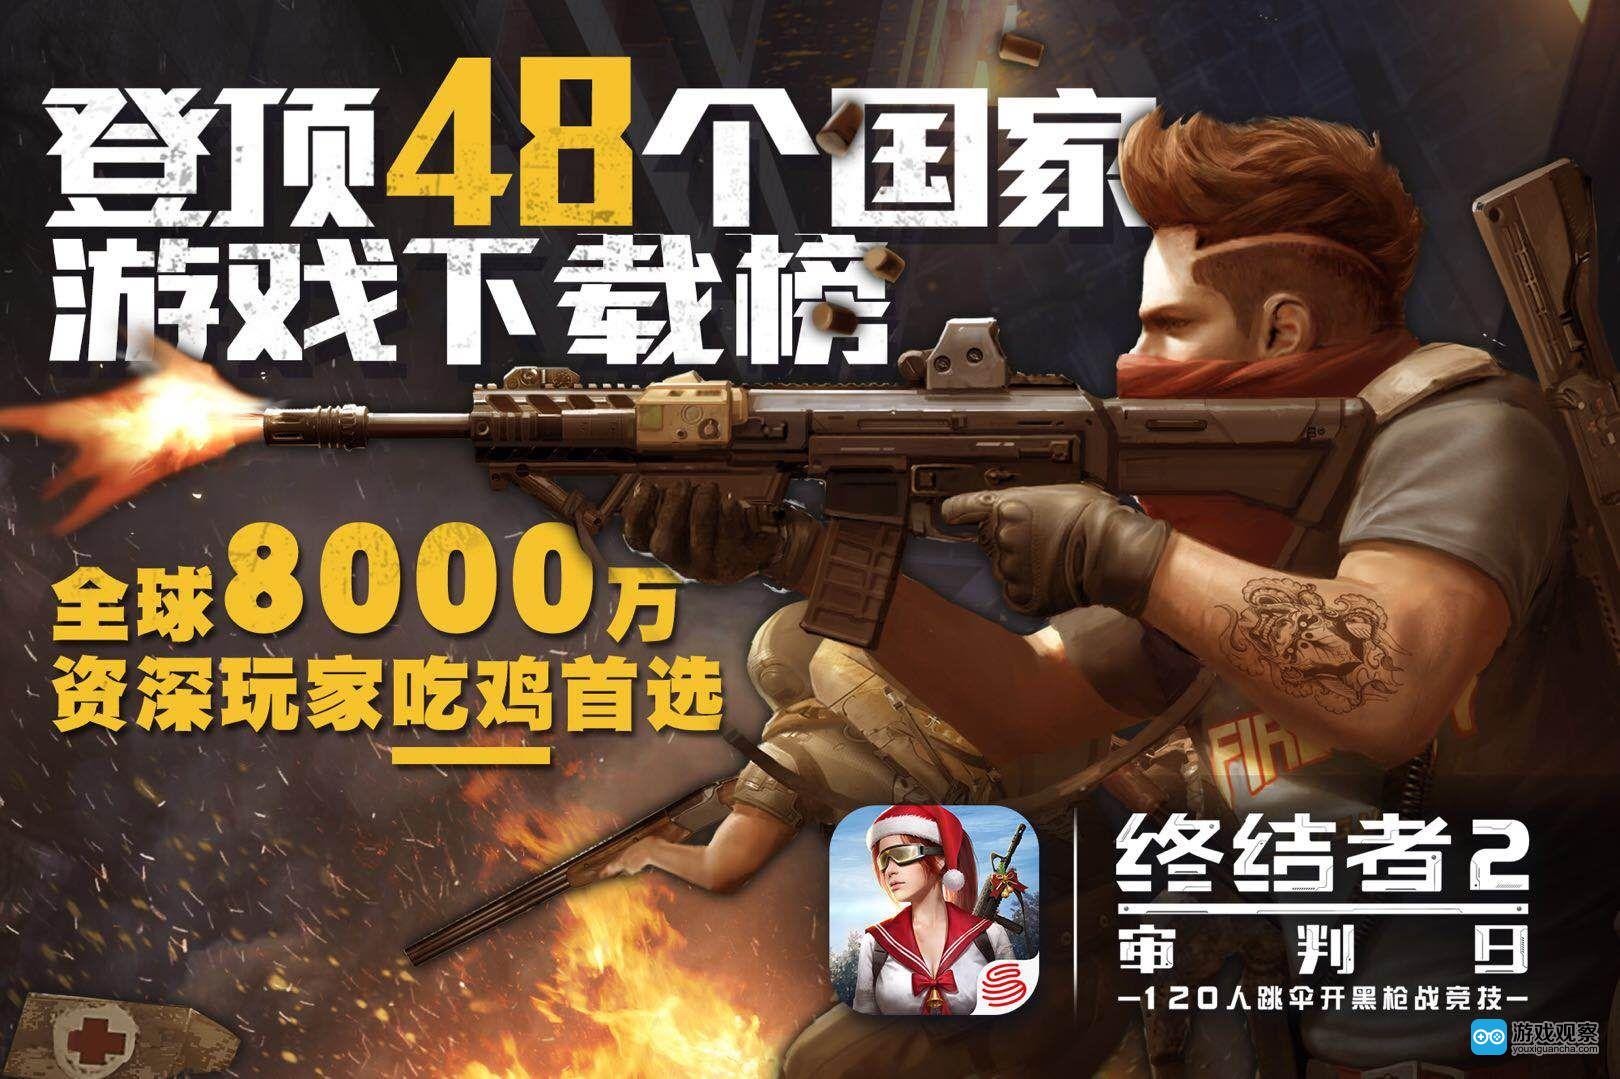 登顶48国下载榜 《终结者2》全球玩家数增长迅速 已突破8000万用户